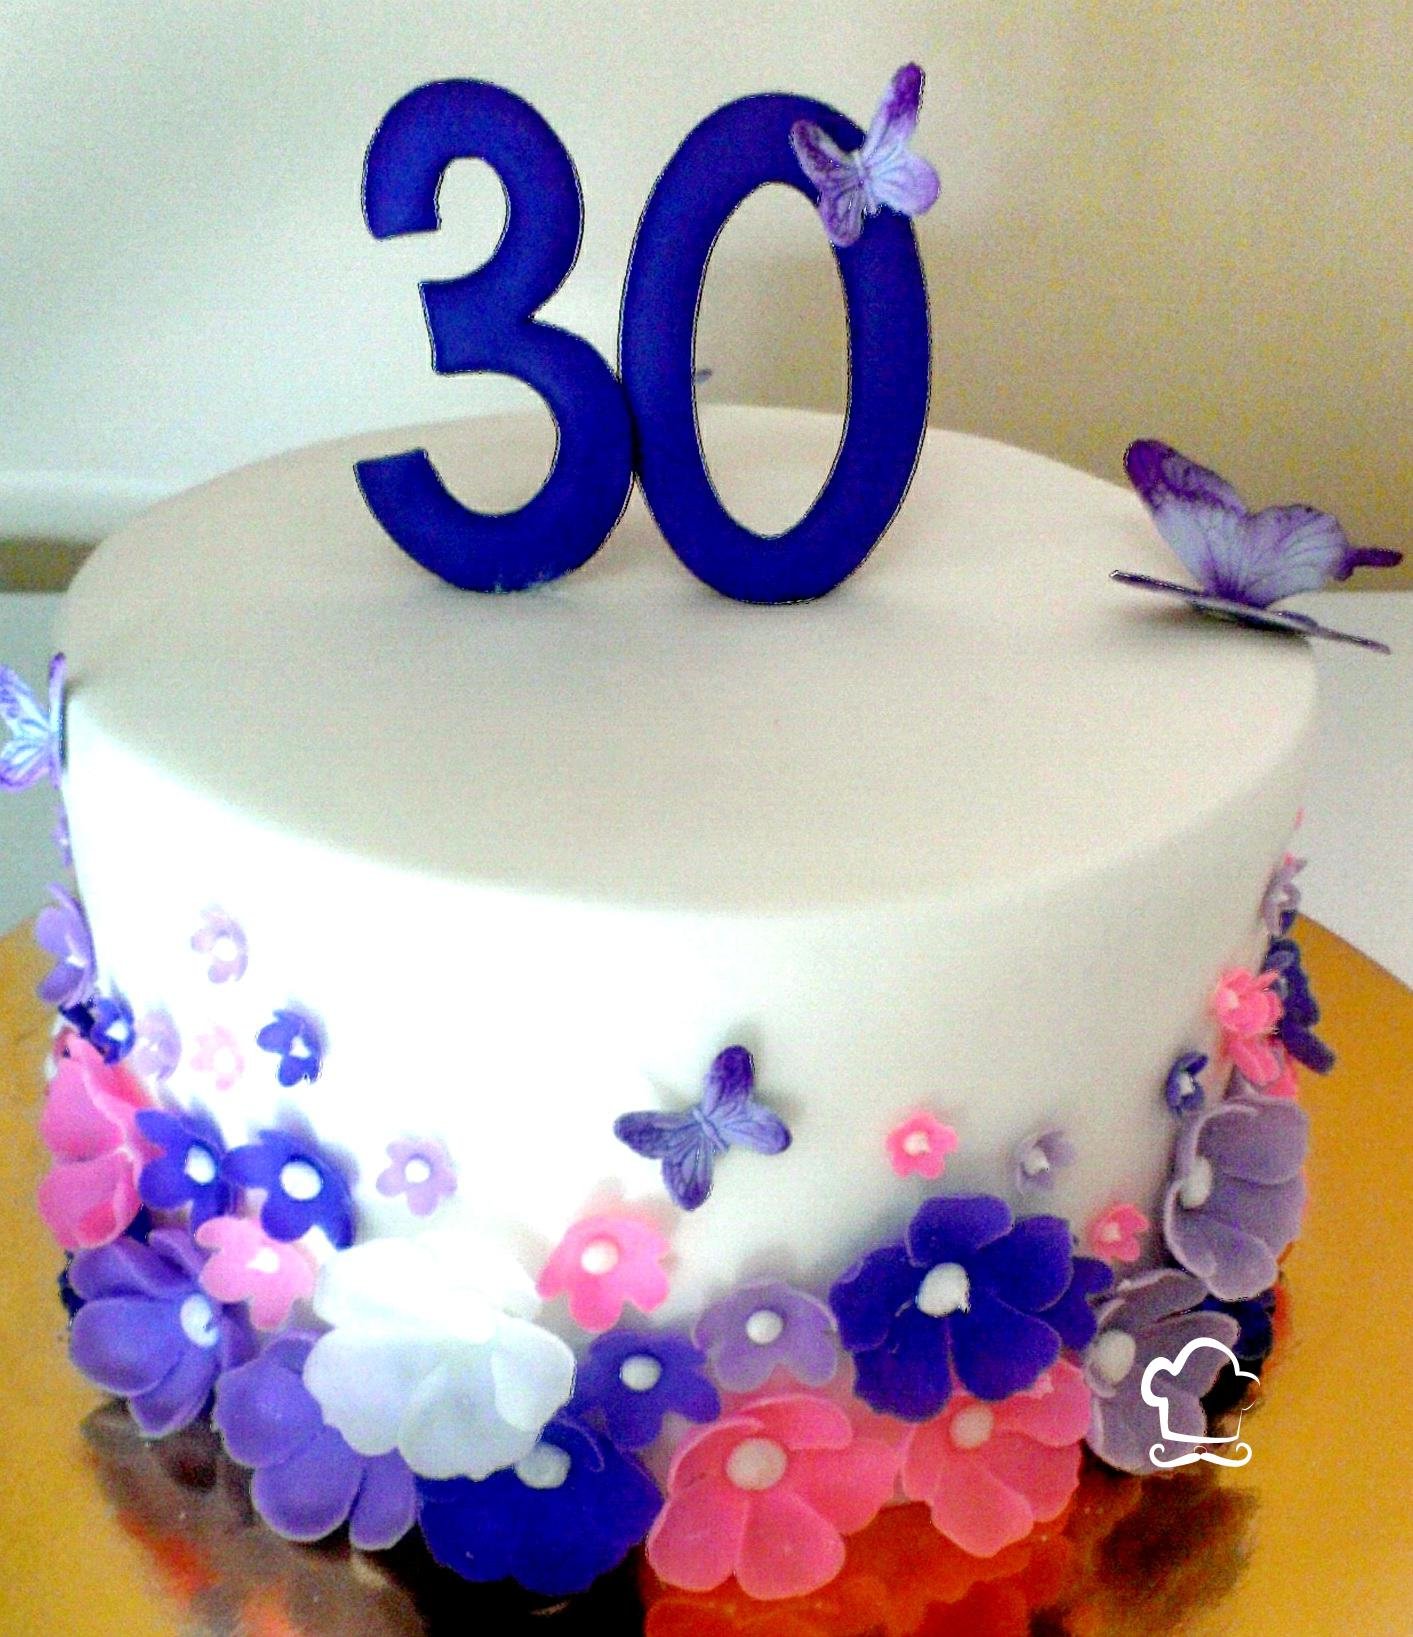 Юбилей 30 лет жене. Красивый торт на день рождения 30 лет. Торт на день рождения 30 лет девушке. Торт 30 лет девушке красивый на день рождения. Украшение торта на юбилей 30 лет девушке.